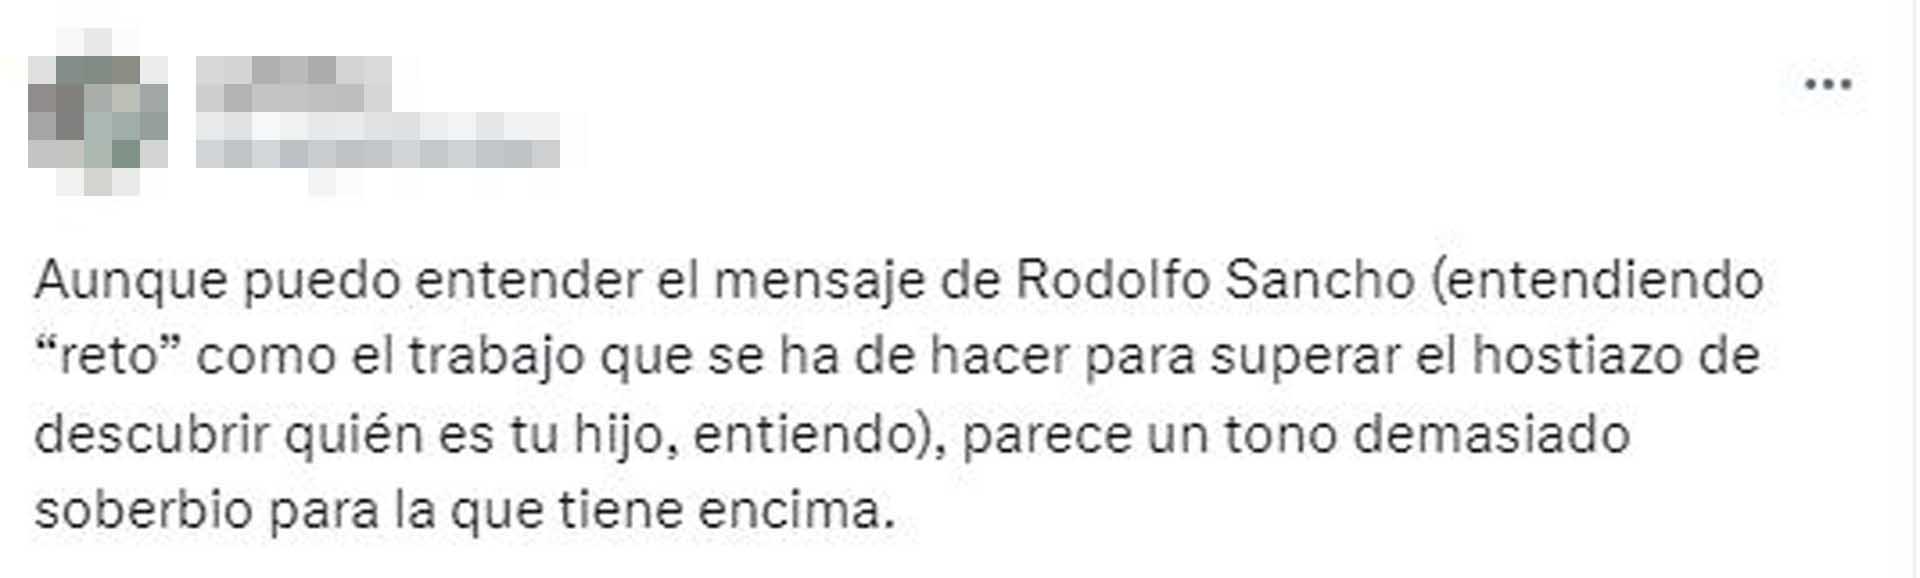 Numerosos mensajes contra Rodolfo Sancho por sus declaraciones